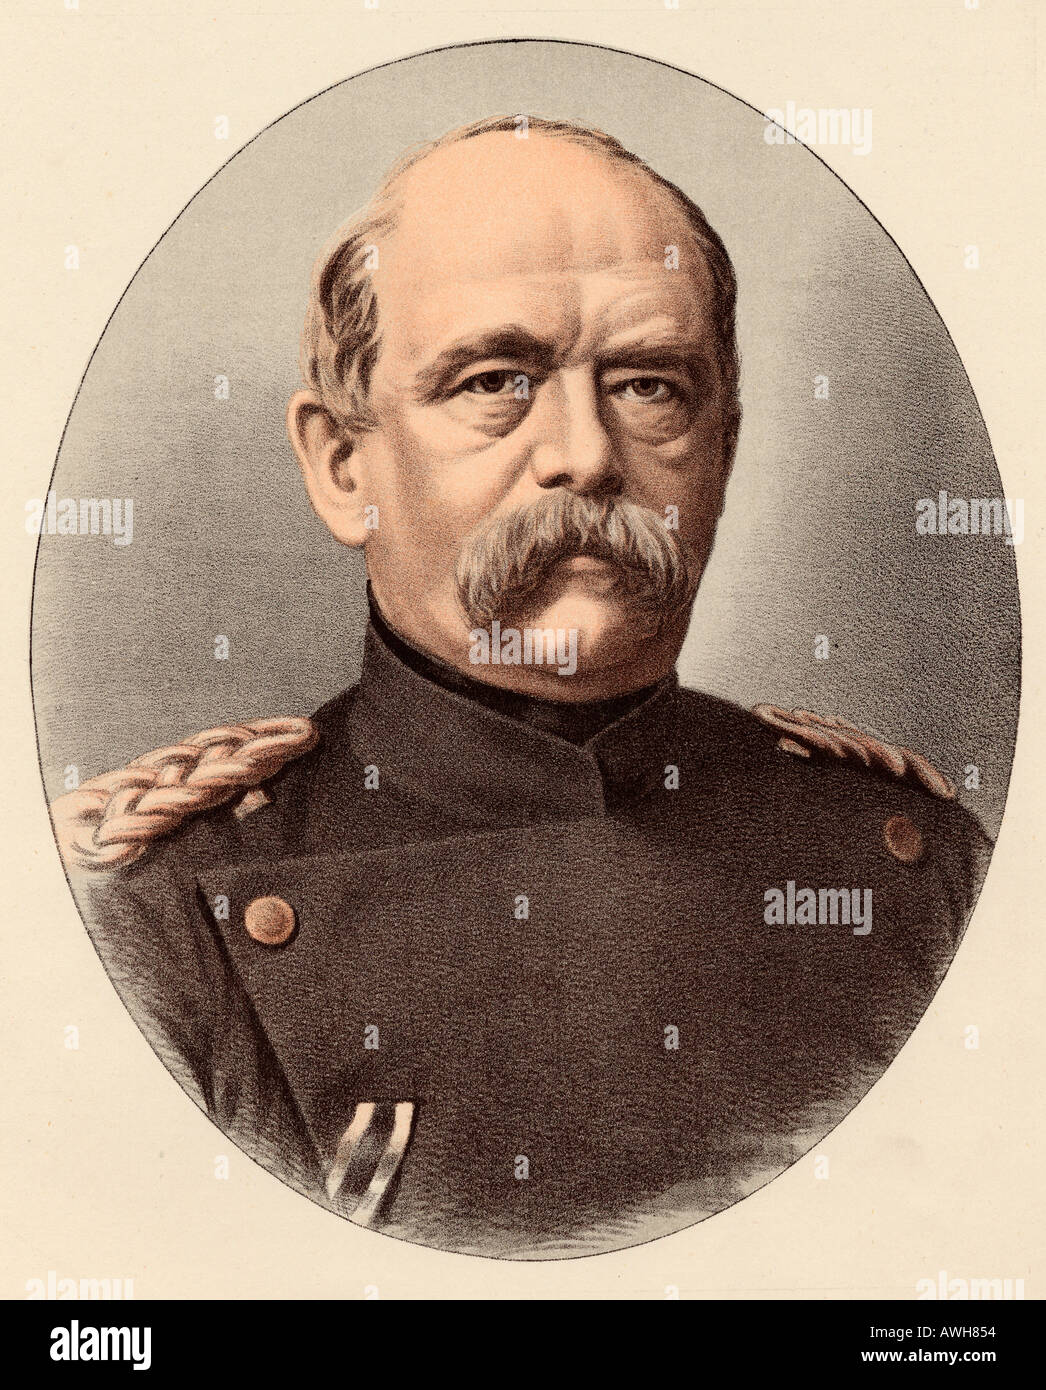 Otto Eduard Leopold, principe di Bismarck, duca di Lauenburg, Otto von Bismarck, 1815 - 1898. Statista prussiano, cancelliere tedesco. Foto Stock